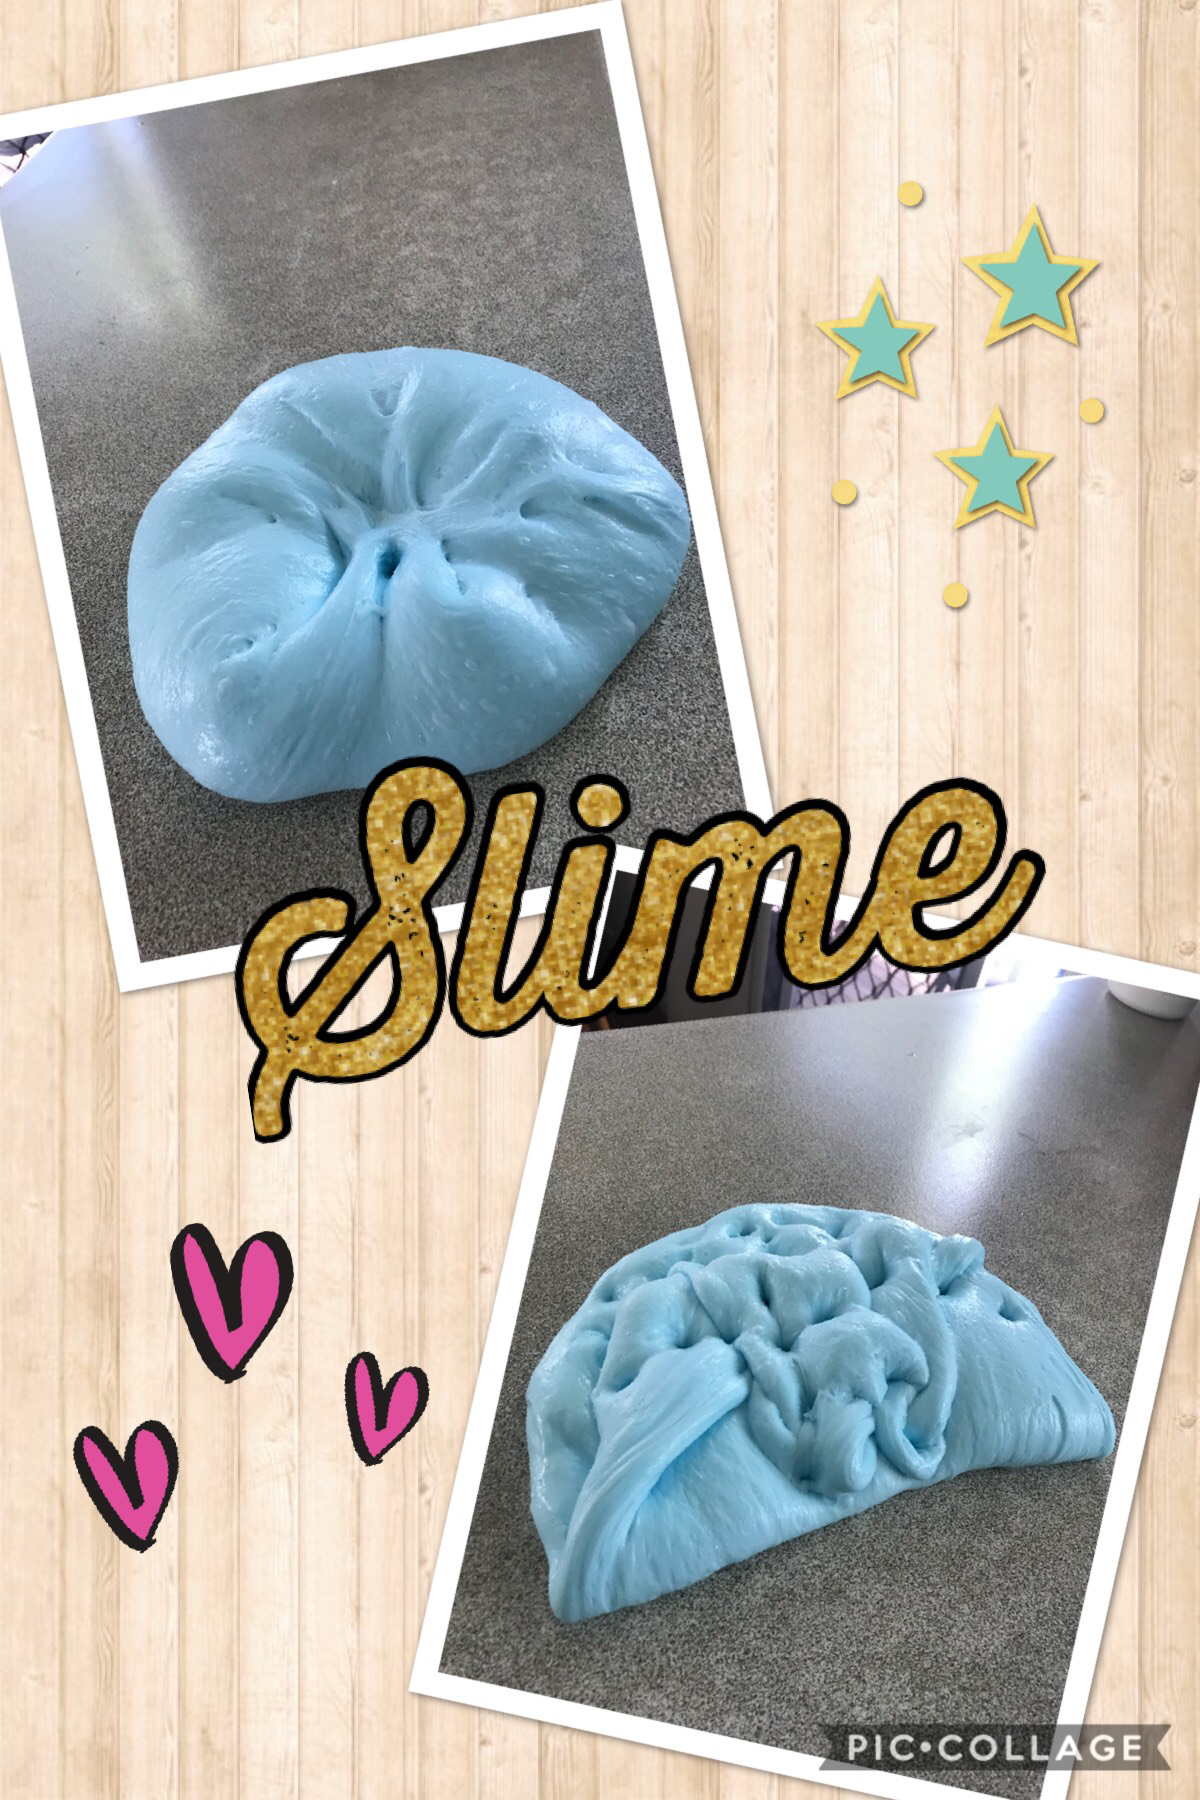 Do you like my slime?❤️